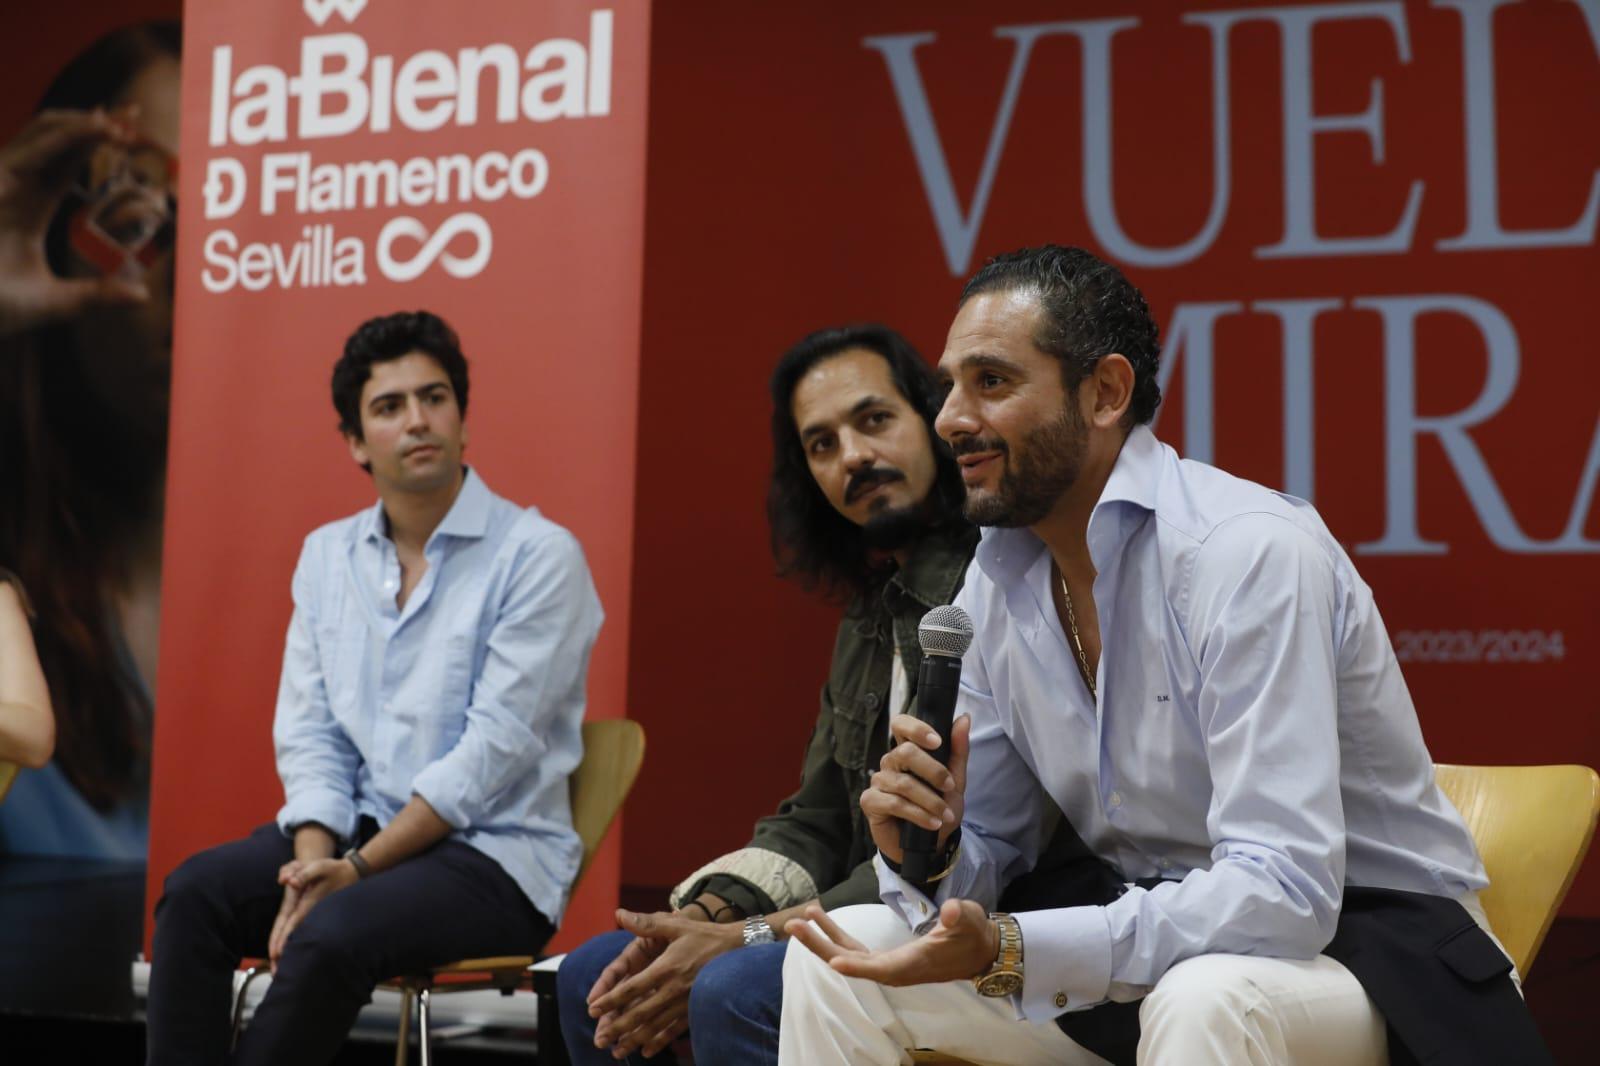 La Bienal de Flamenco de Sevilla, premiada con el galardón Pencho Cros en la 63ª edición del Cante de las Minas